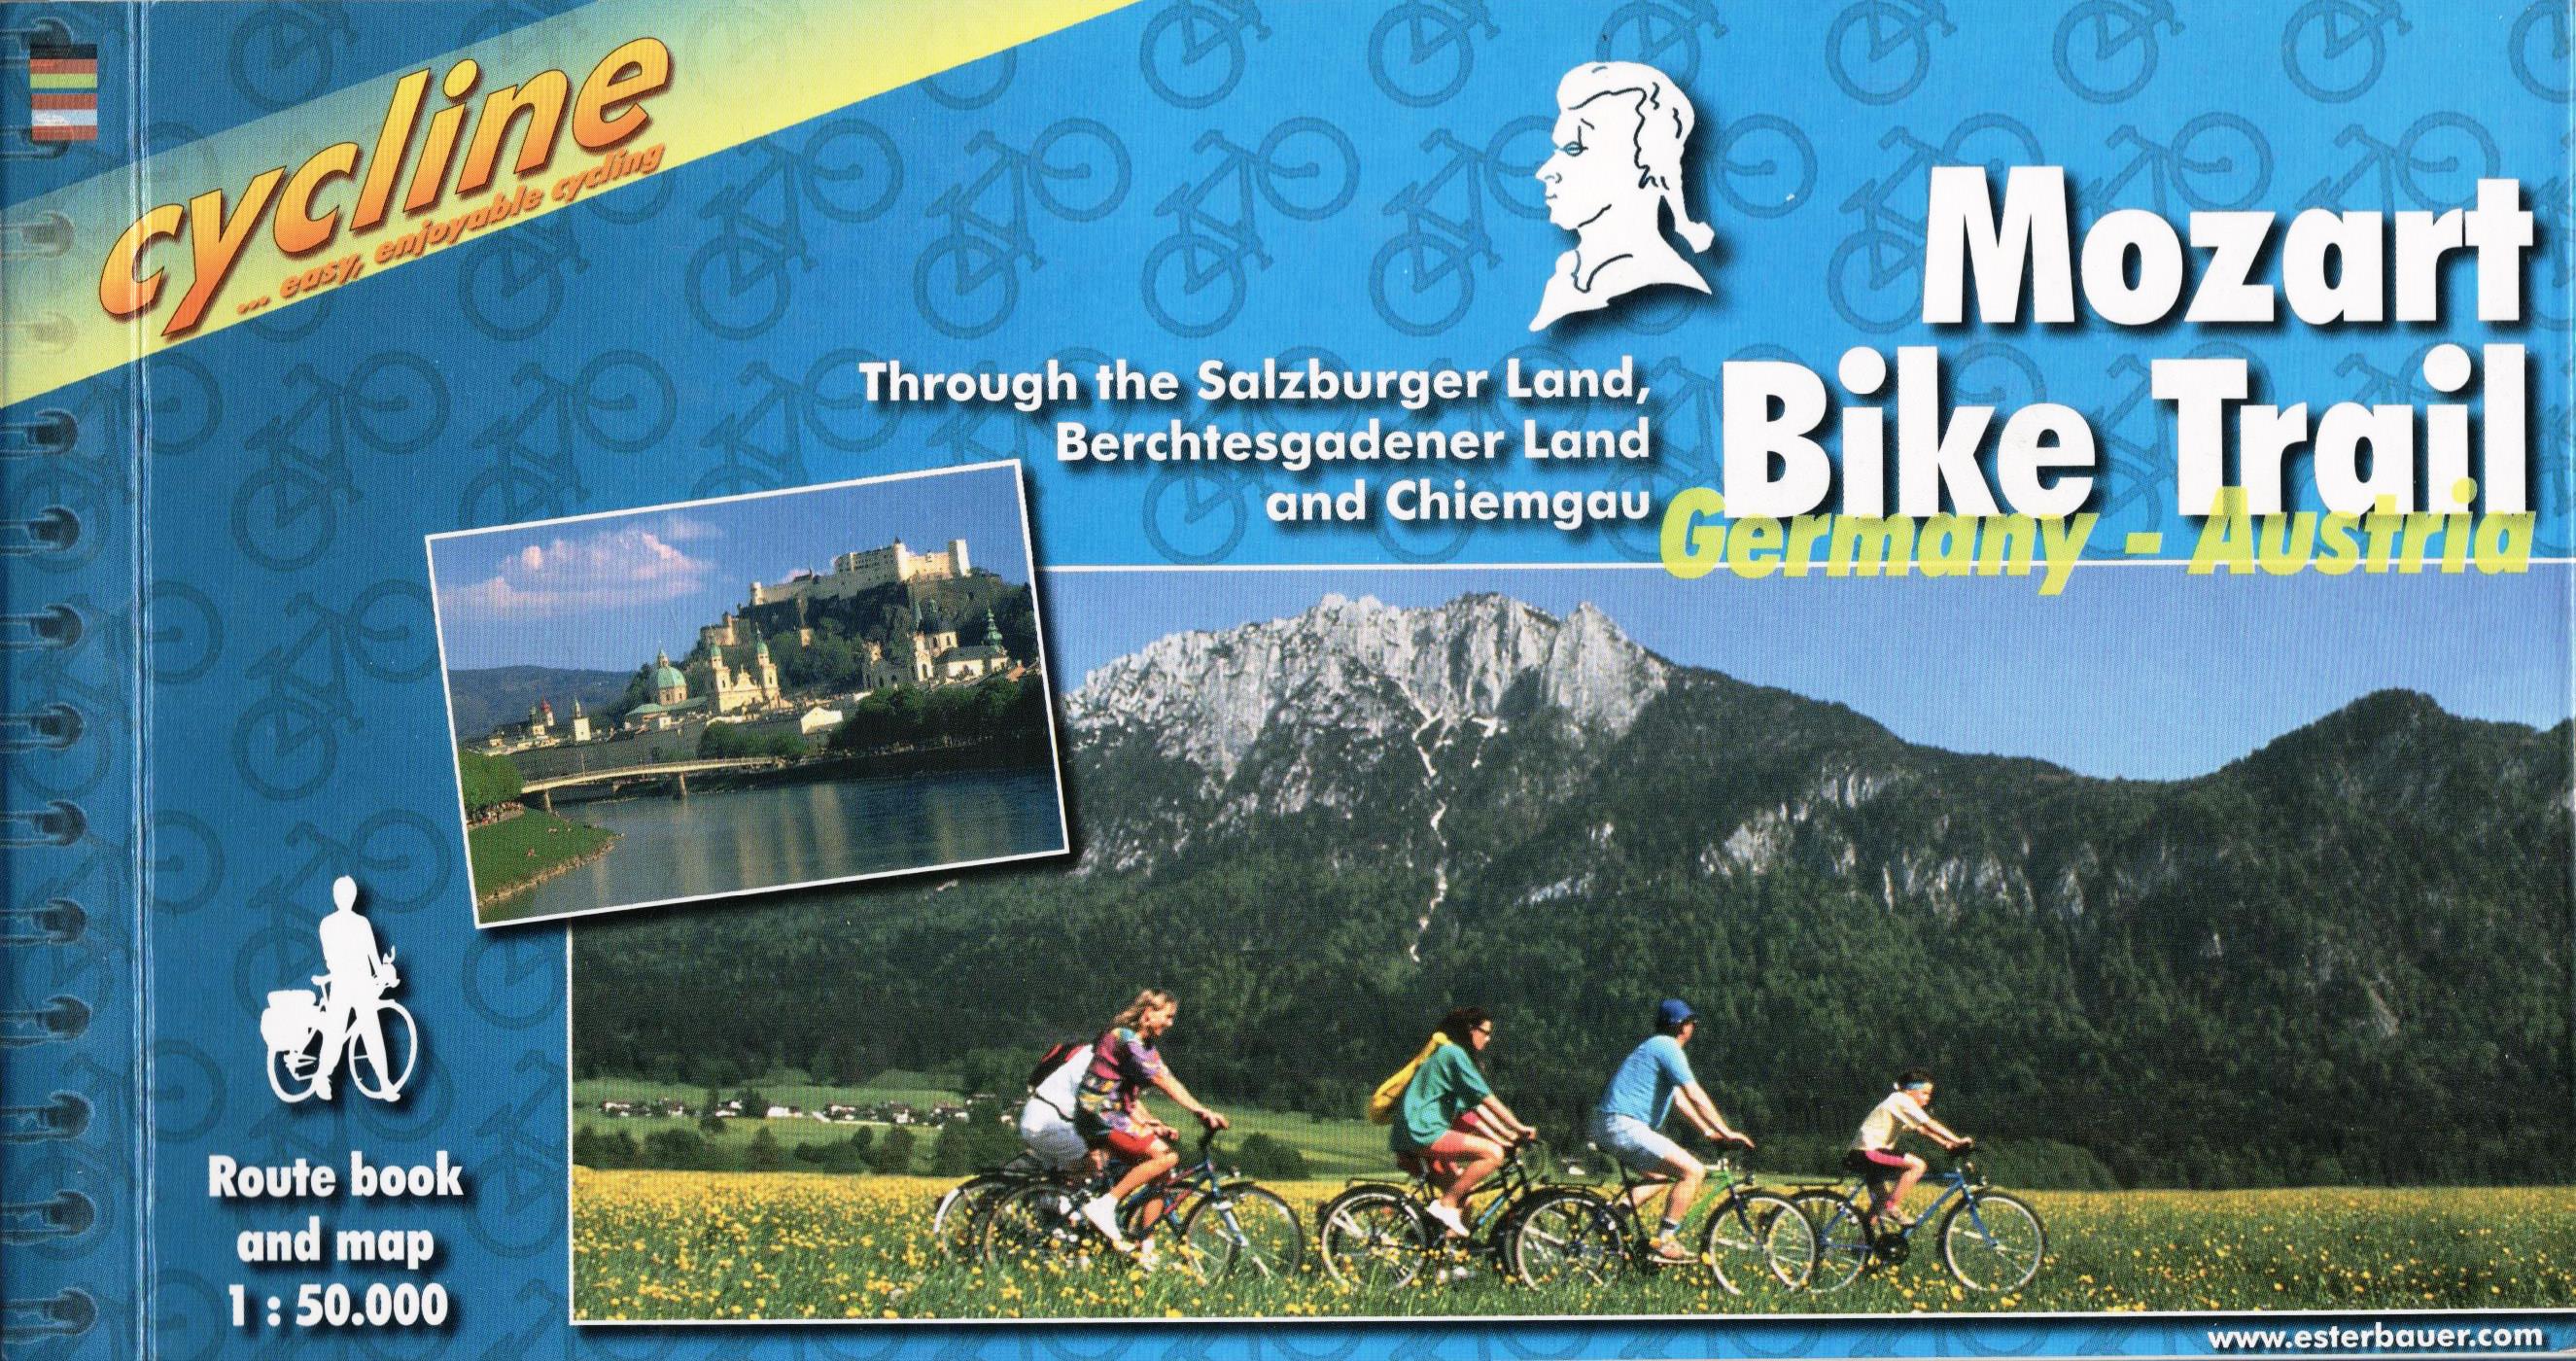 Mozart Bike Trail cyklosprievodca Esterbauer / 2005